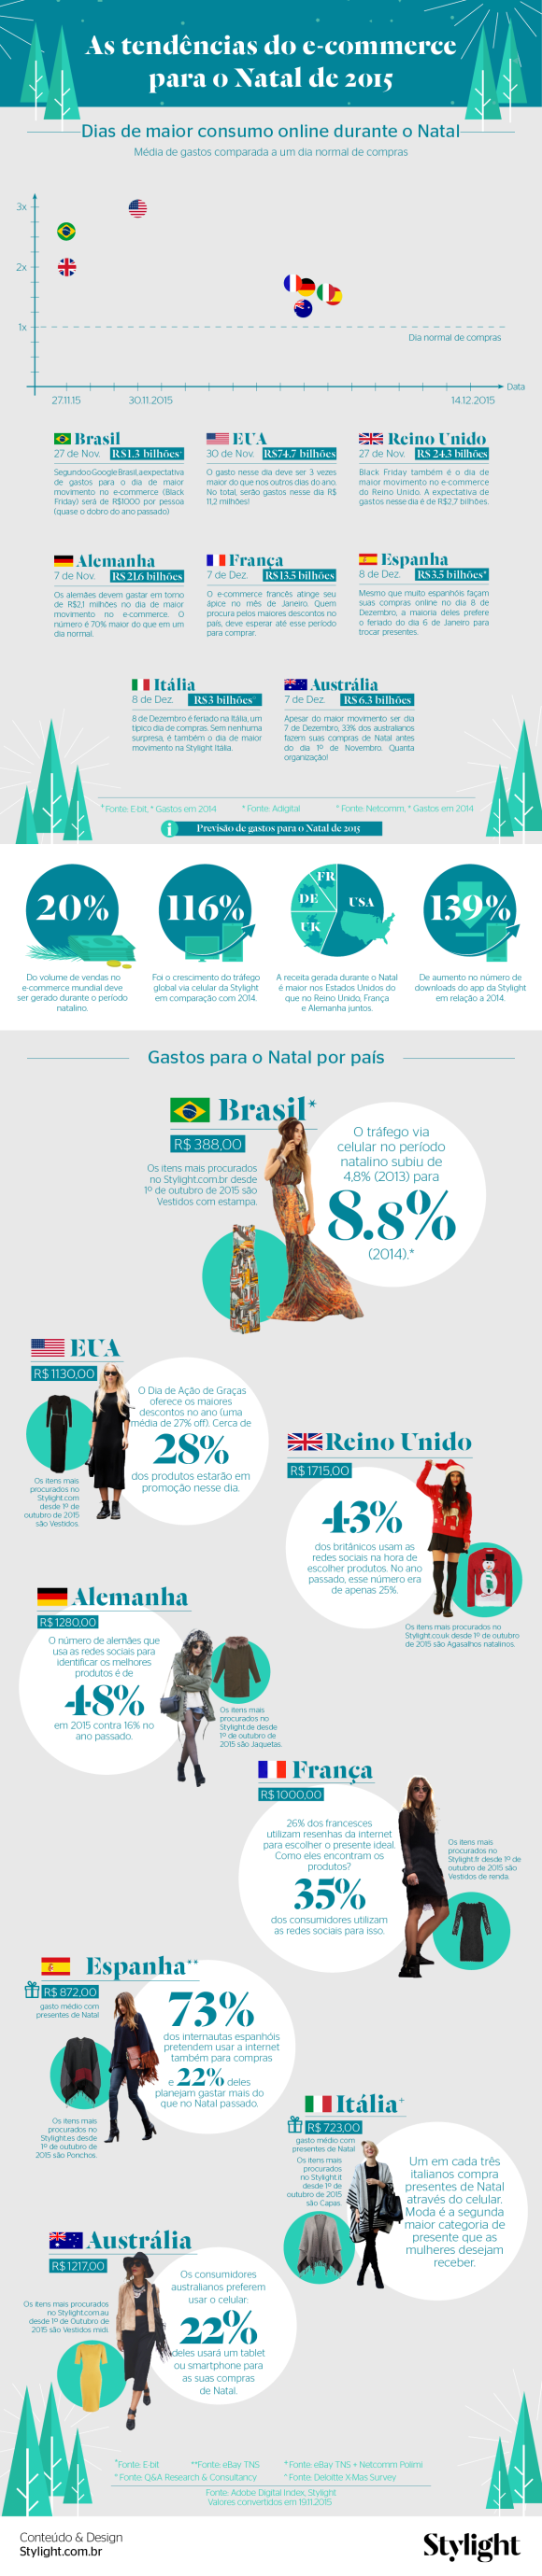 infografico-e-commerce-natal-2015